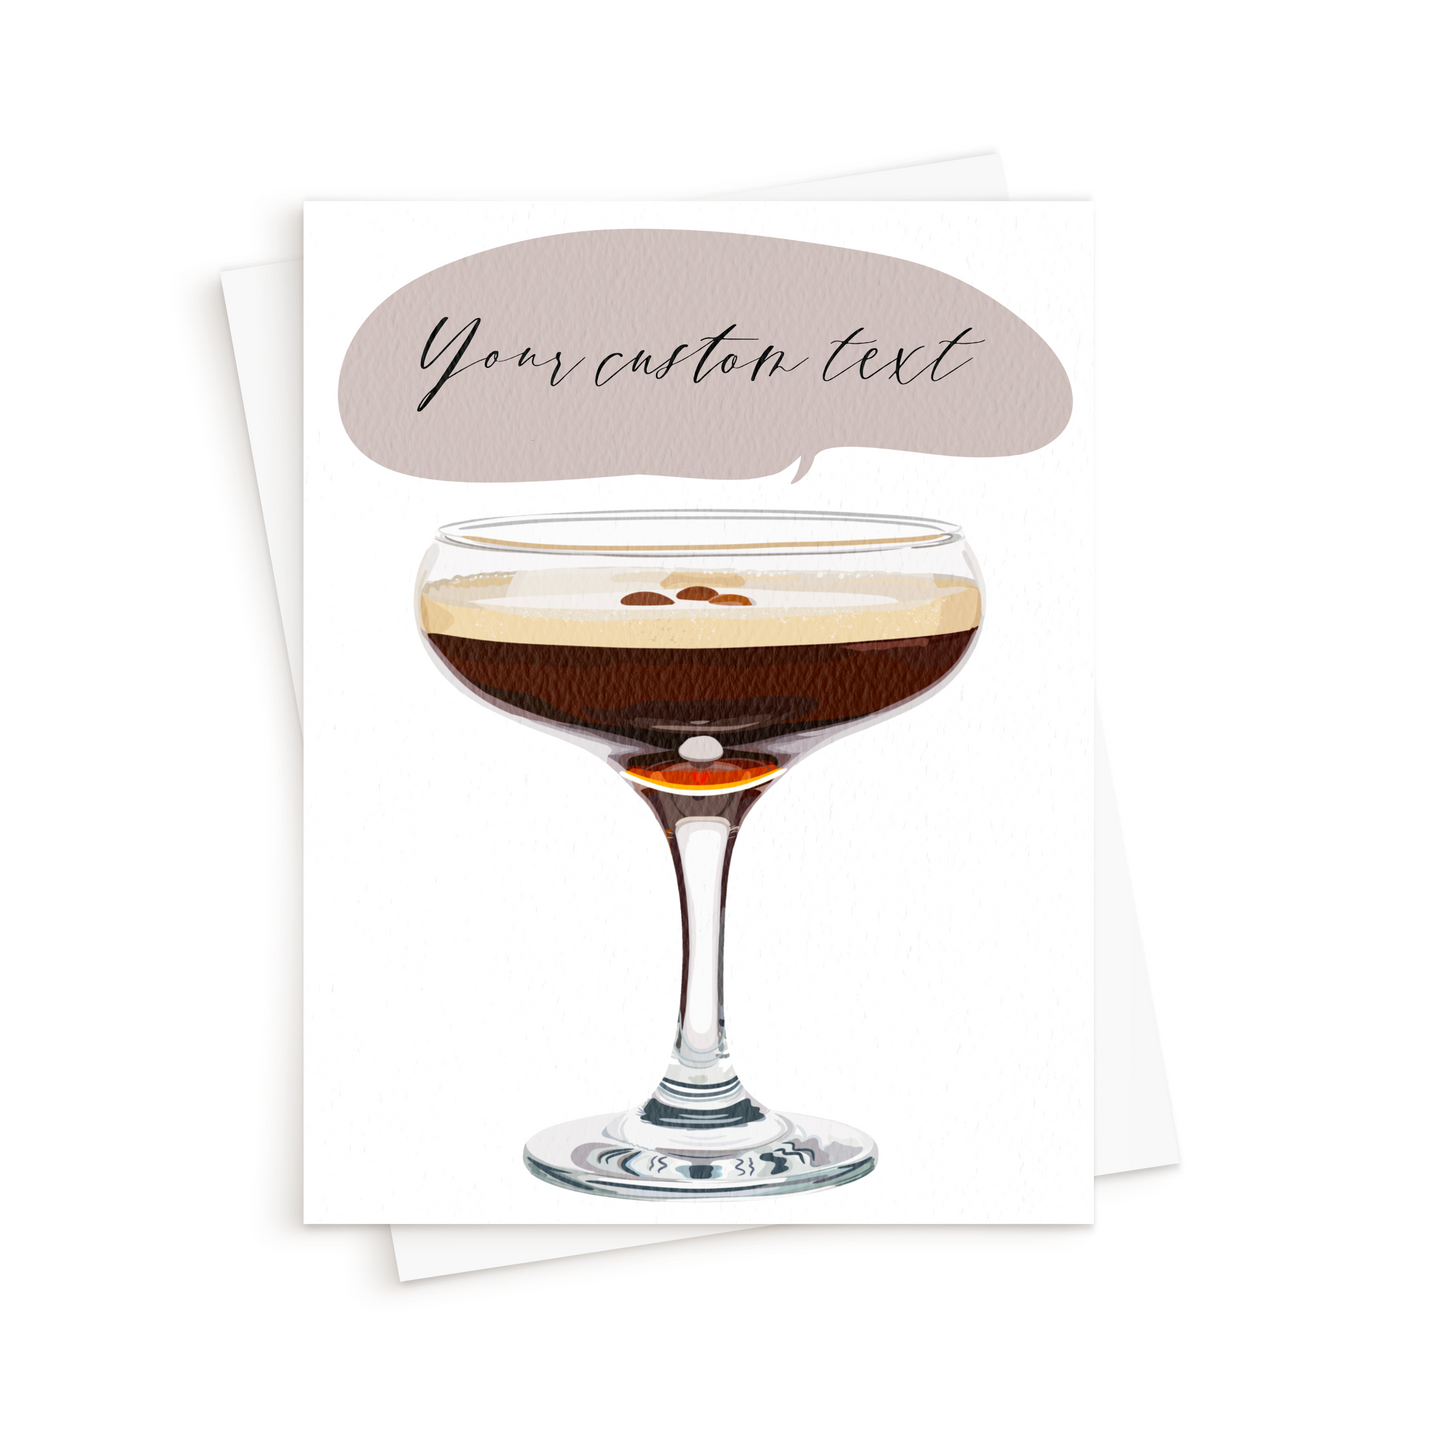 The Espresso Martini Birthday Card